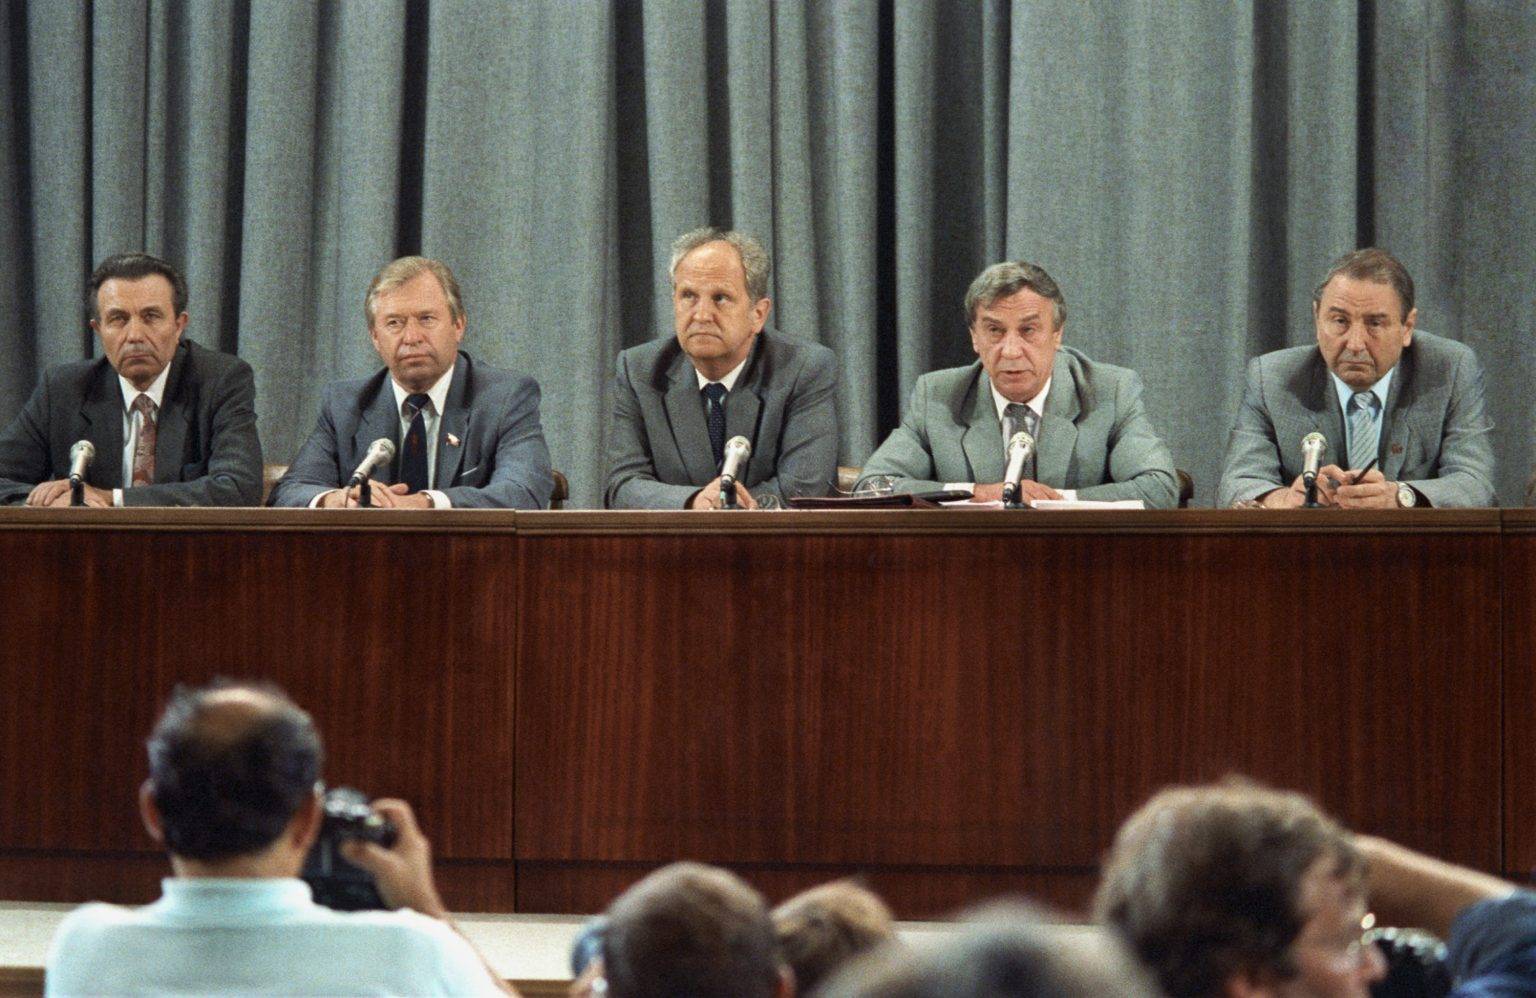 Пресконференция на пучистите, Генадий Янаев е вторият отдясно наляво